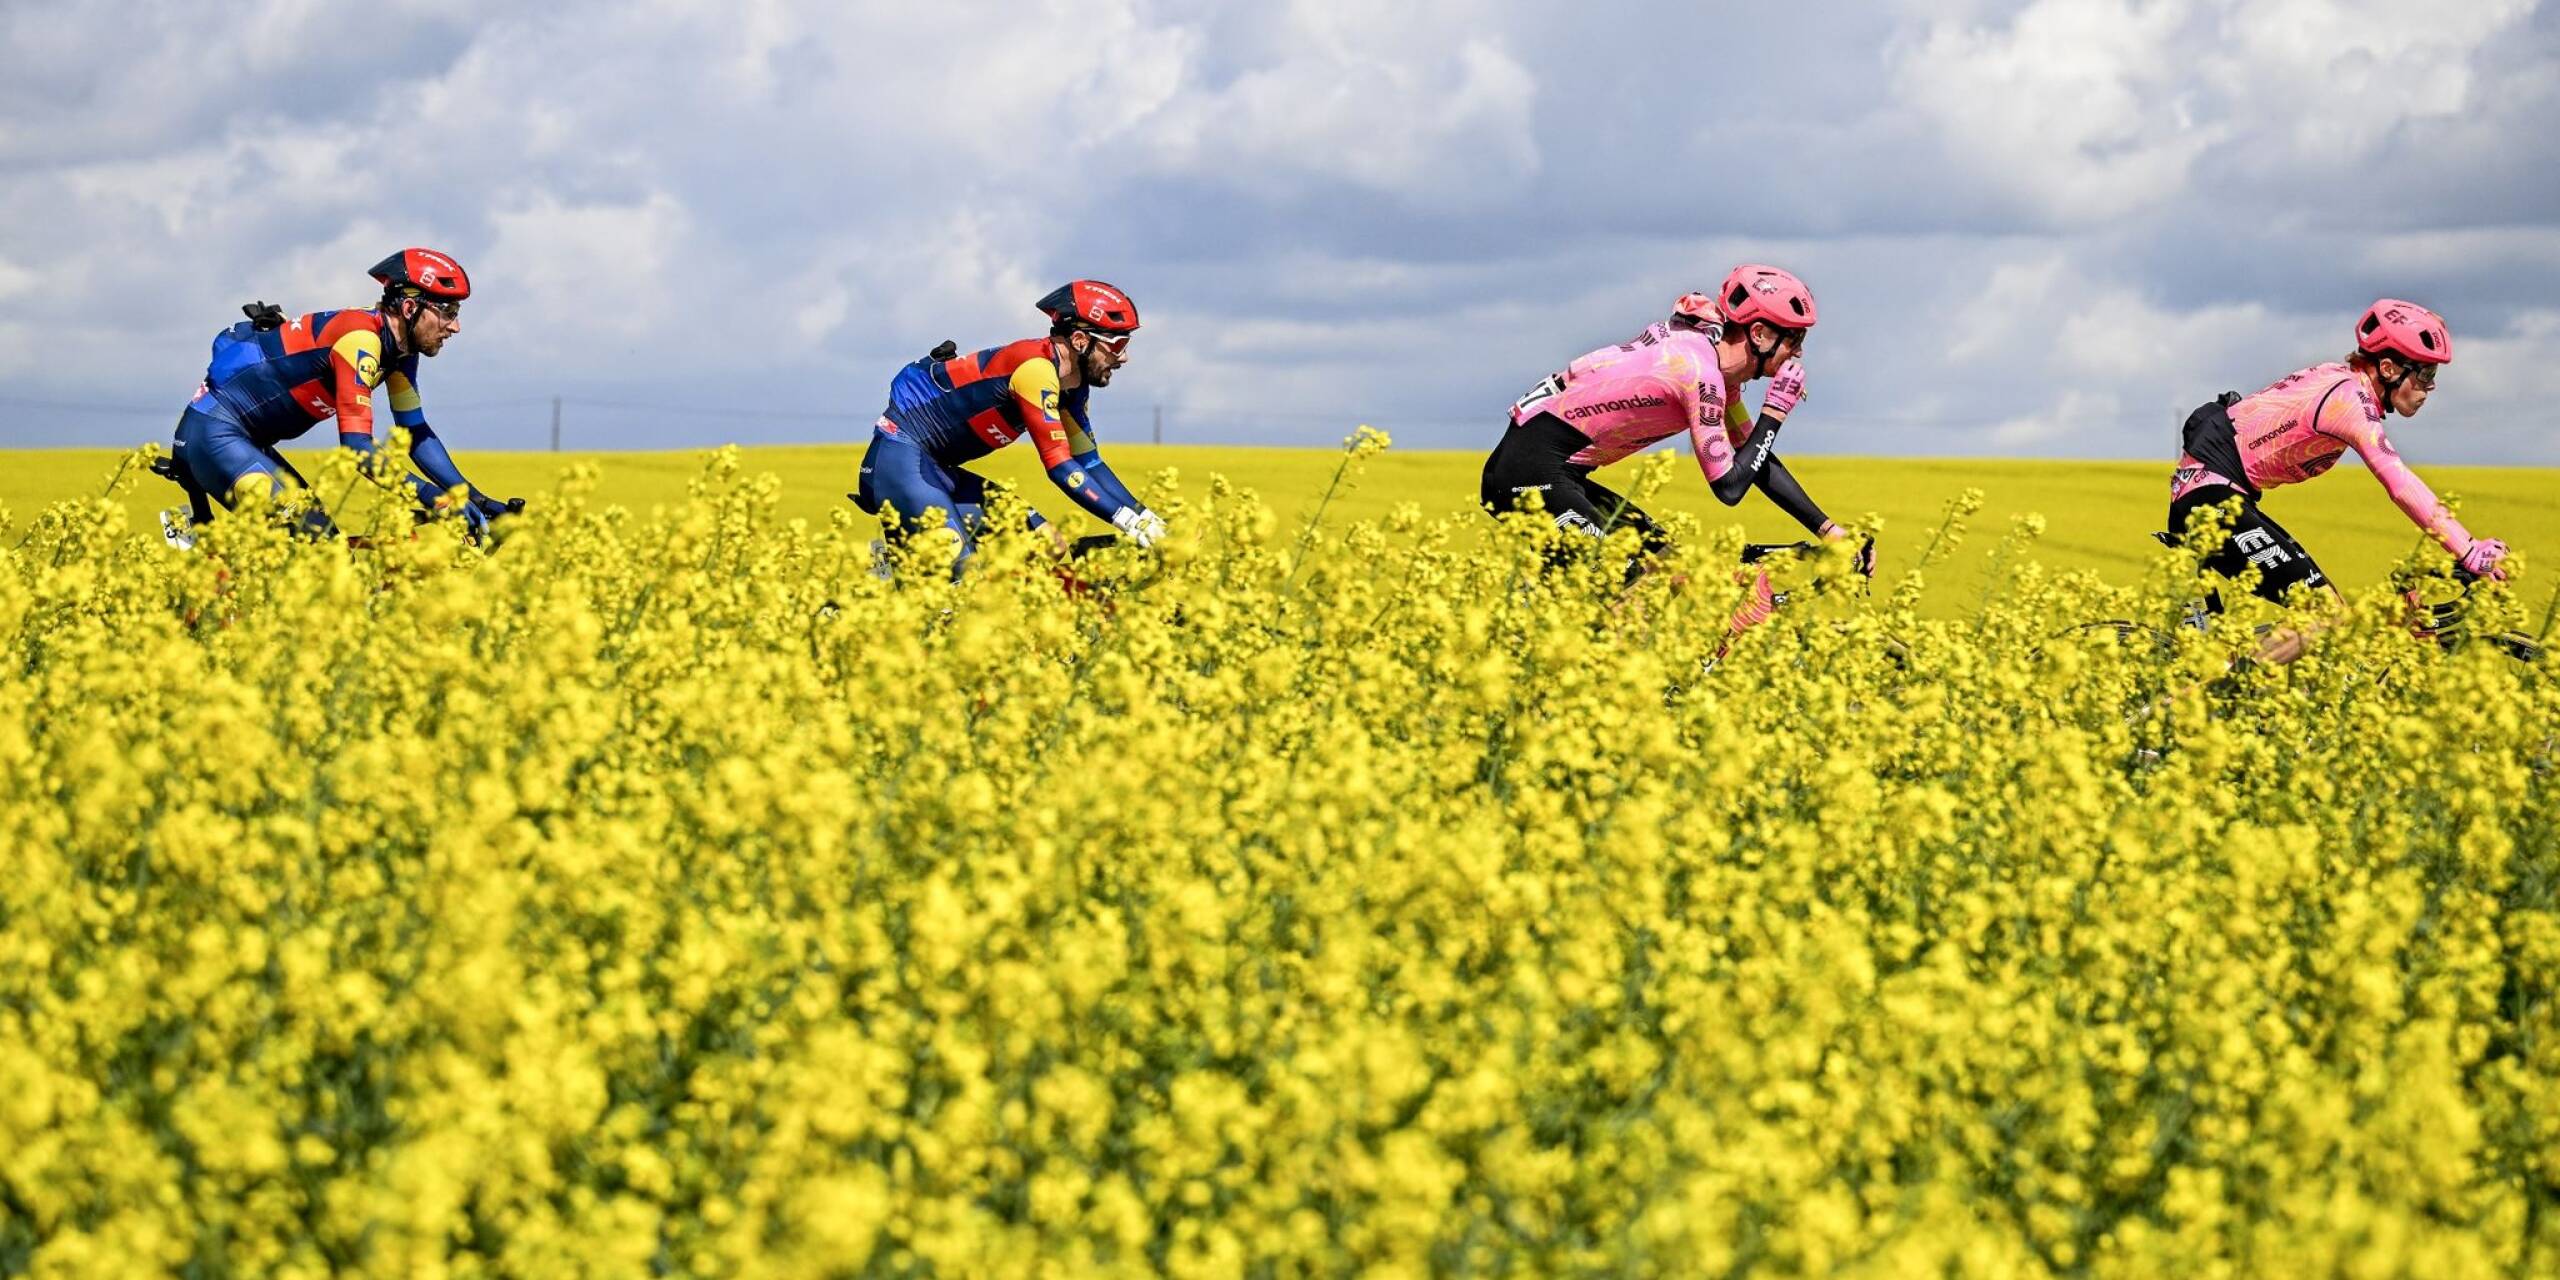 Fahrt im Frühlingswind: Durch blühende Rapsfelder führt das Eintagsrennen Flèche Wallonne der UCI Worldtour in Belgien.